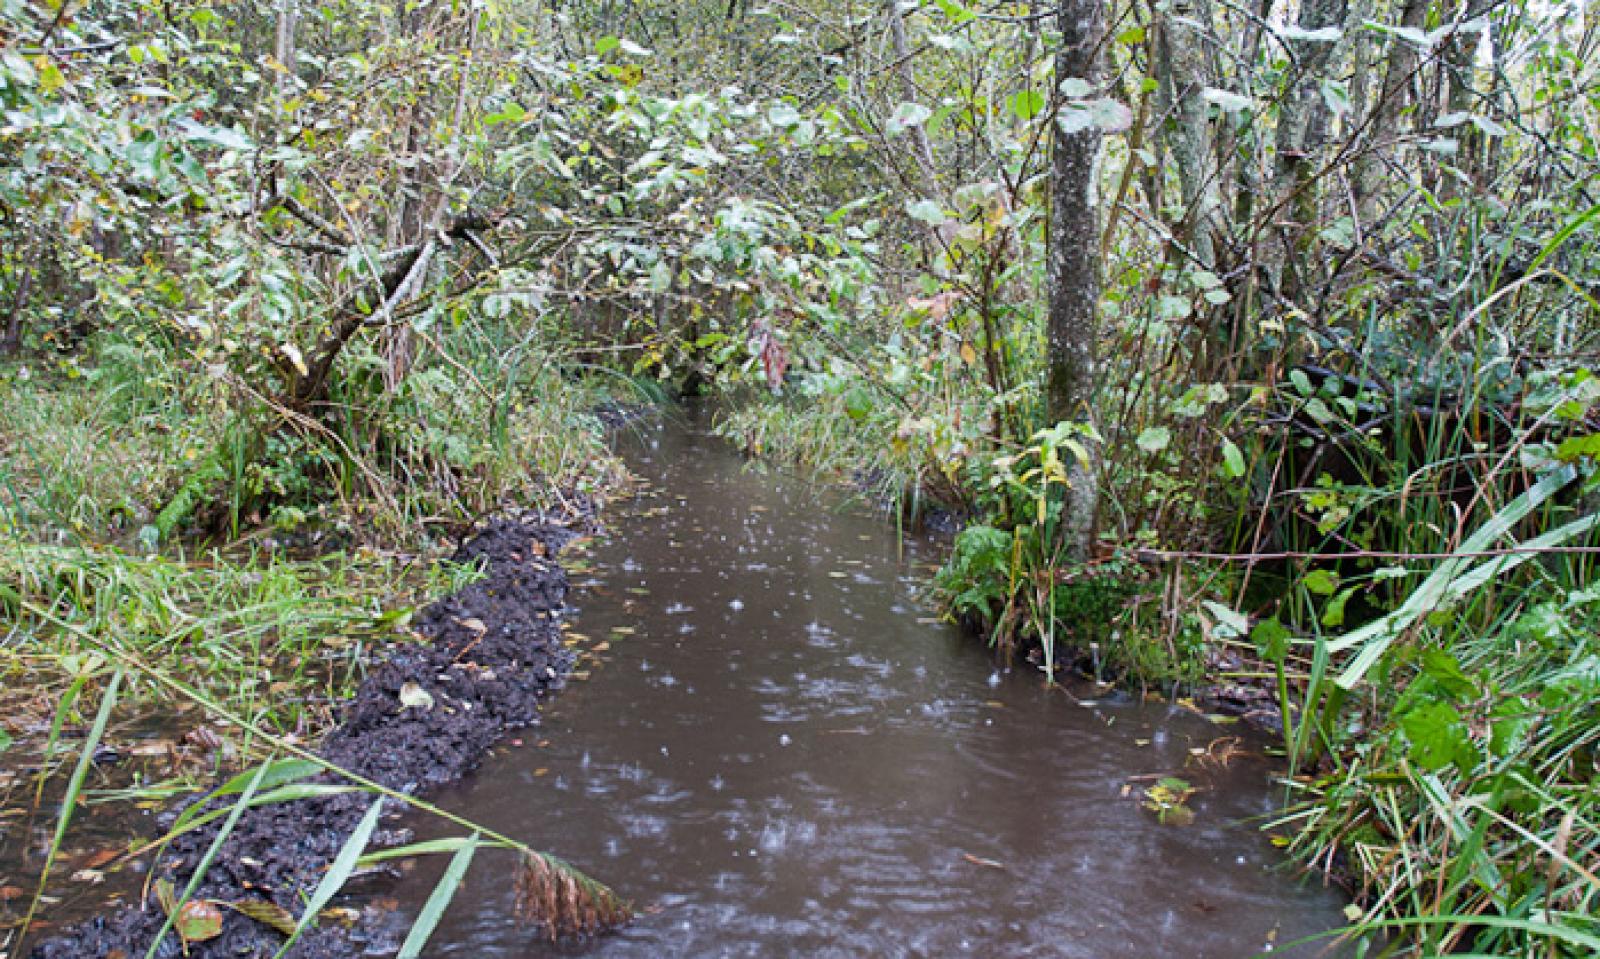 Canal dans une forêt alluviale. On voit particulièrement bien la boue extraite et accumulée sur la rive à gauche (© Christof Angst)